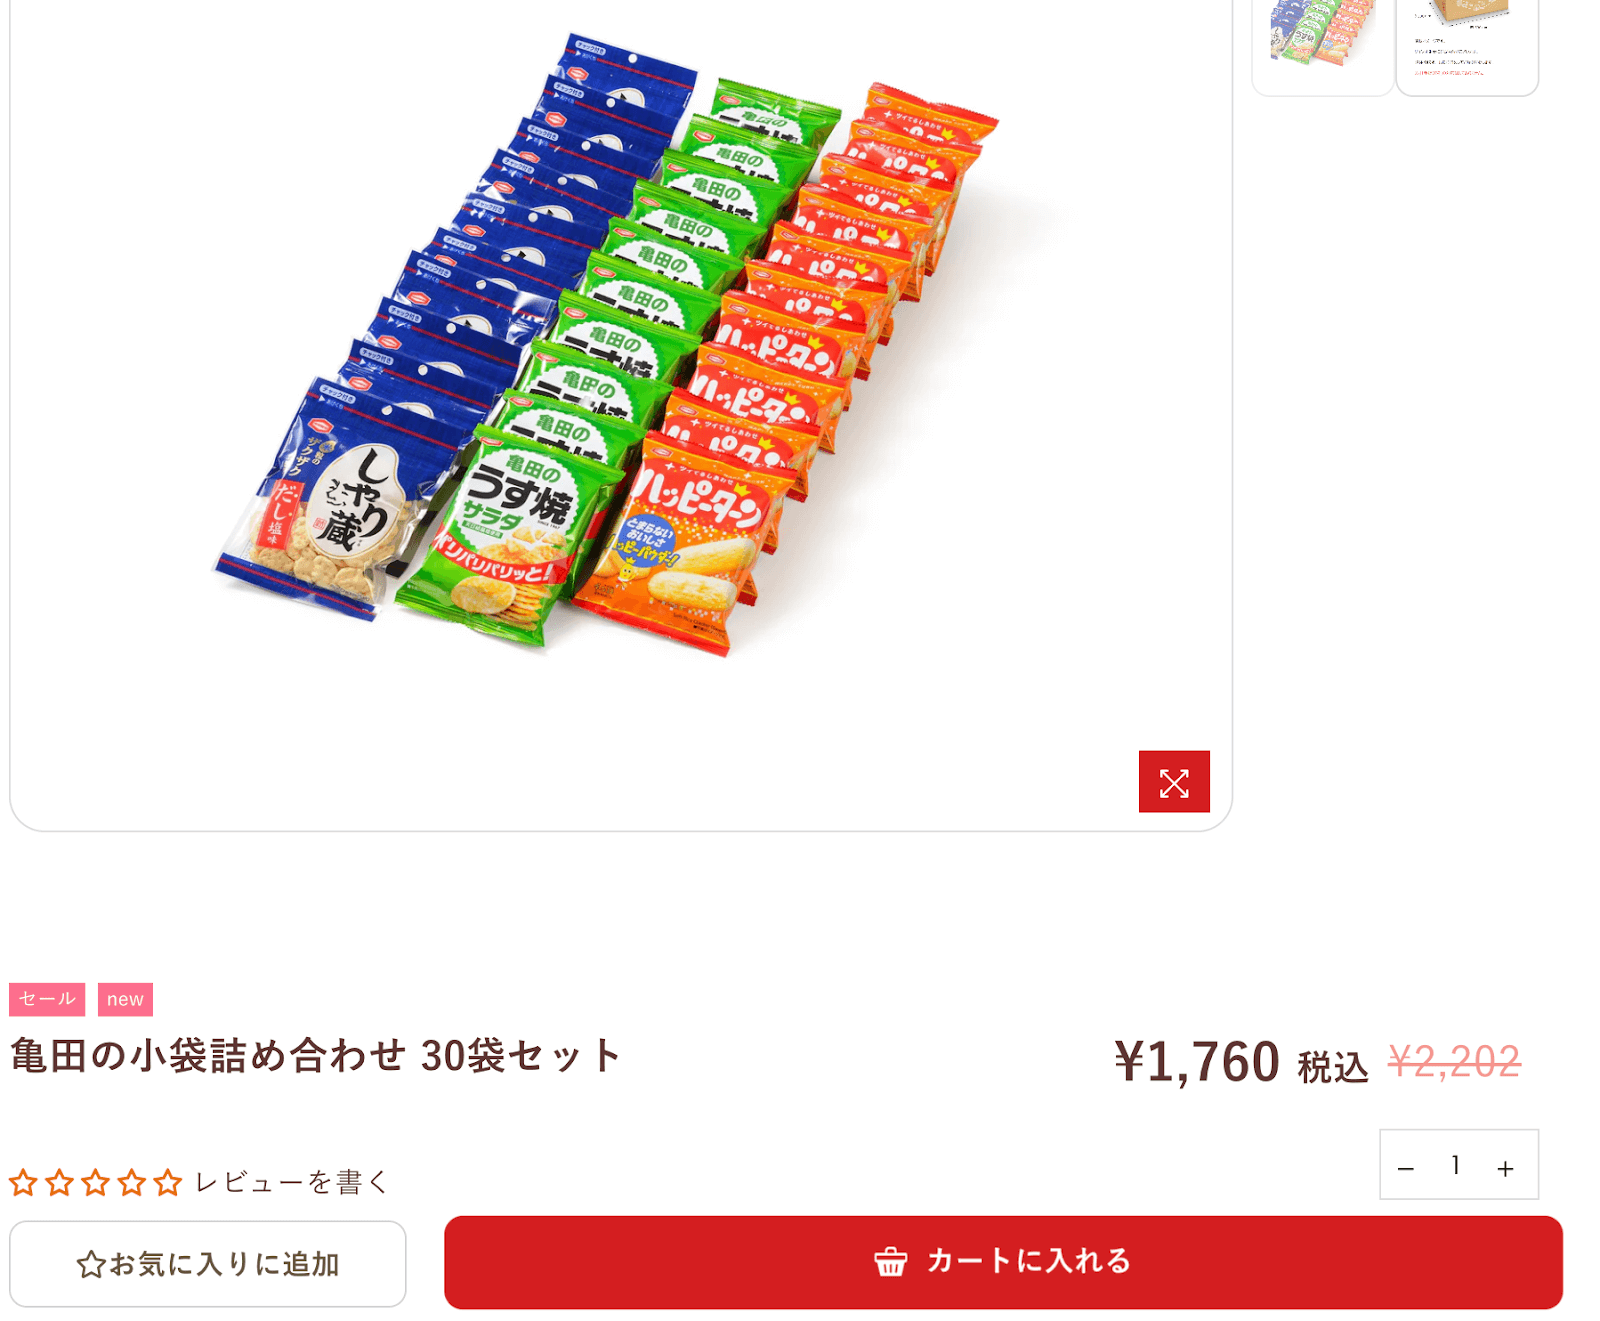 亀田の小袋詰め合わせセットの購入画面